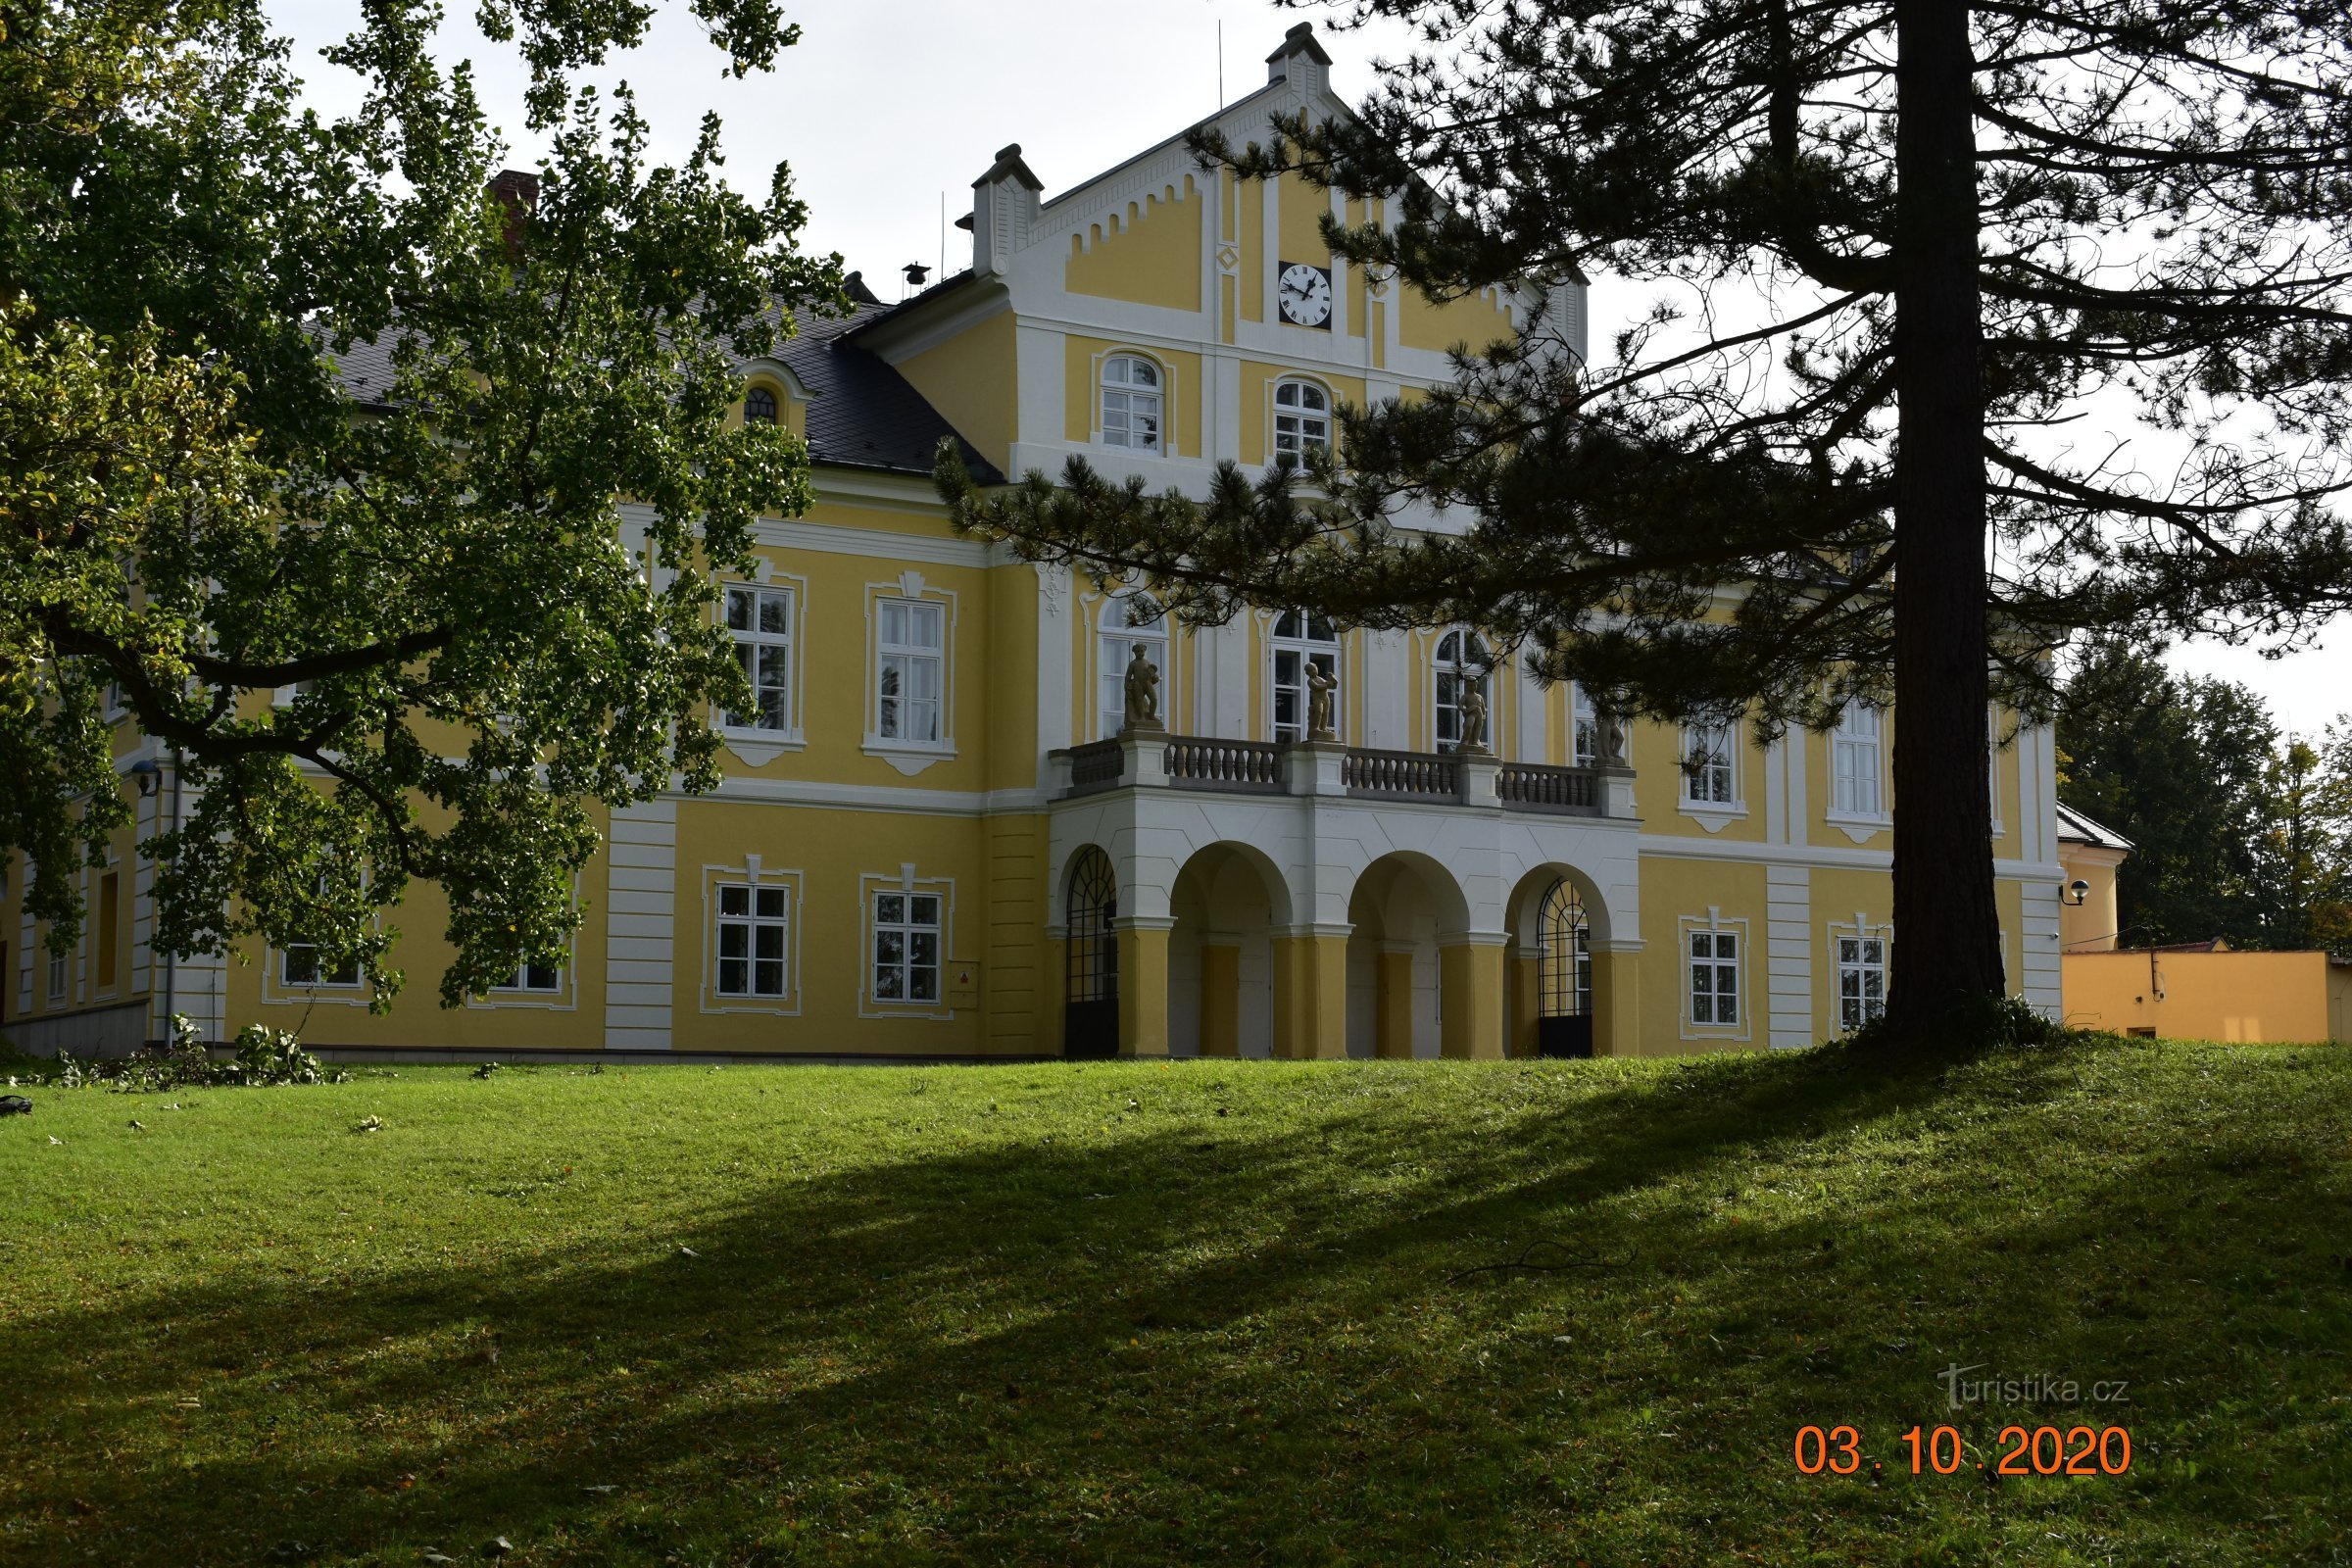 Zamek Nová Horka w Studénce (otwarty 28.9.2020 września XNUMX r.)